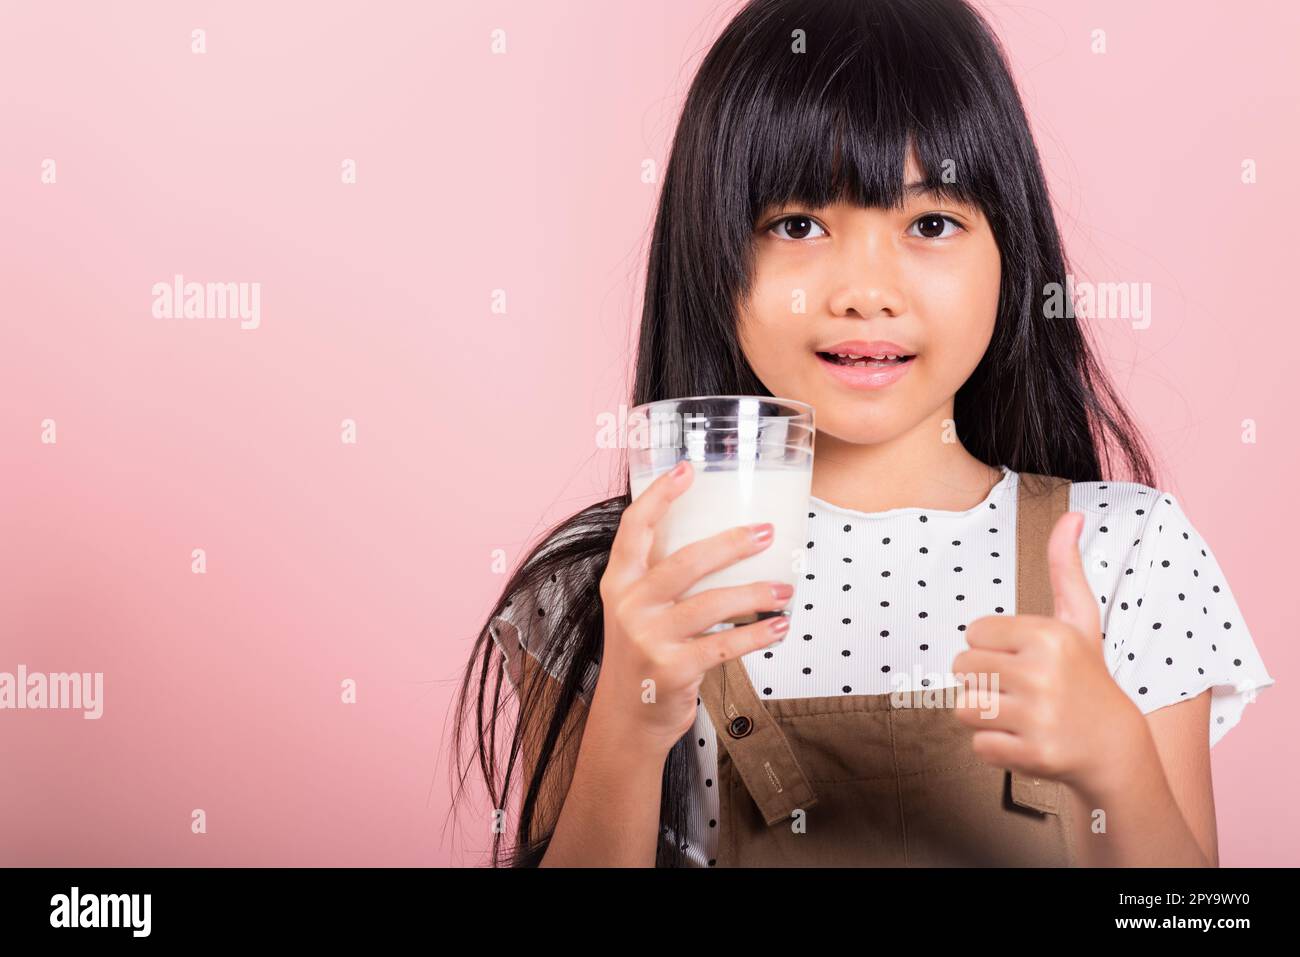 Petit enfant asiatique 10 ans sourire tenir le verre de lait boire du lait blanc et montrer le pouce vers le haut du doigt Banque D'Images